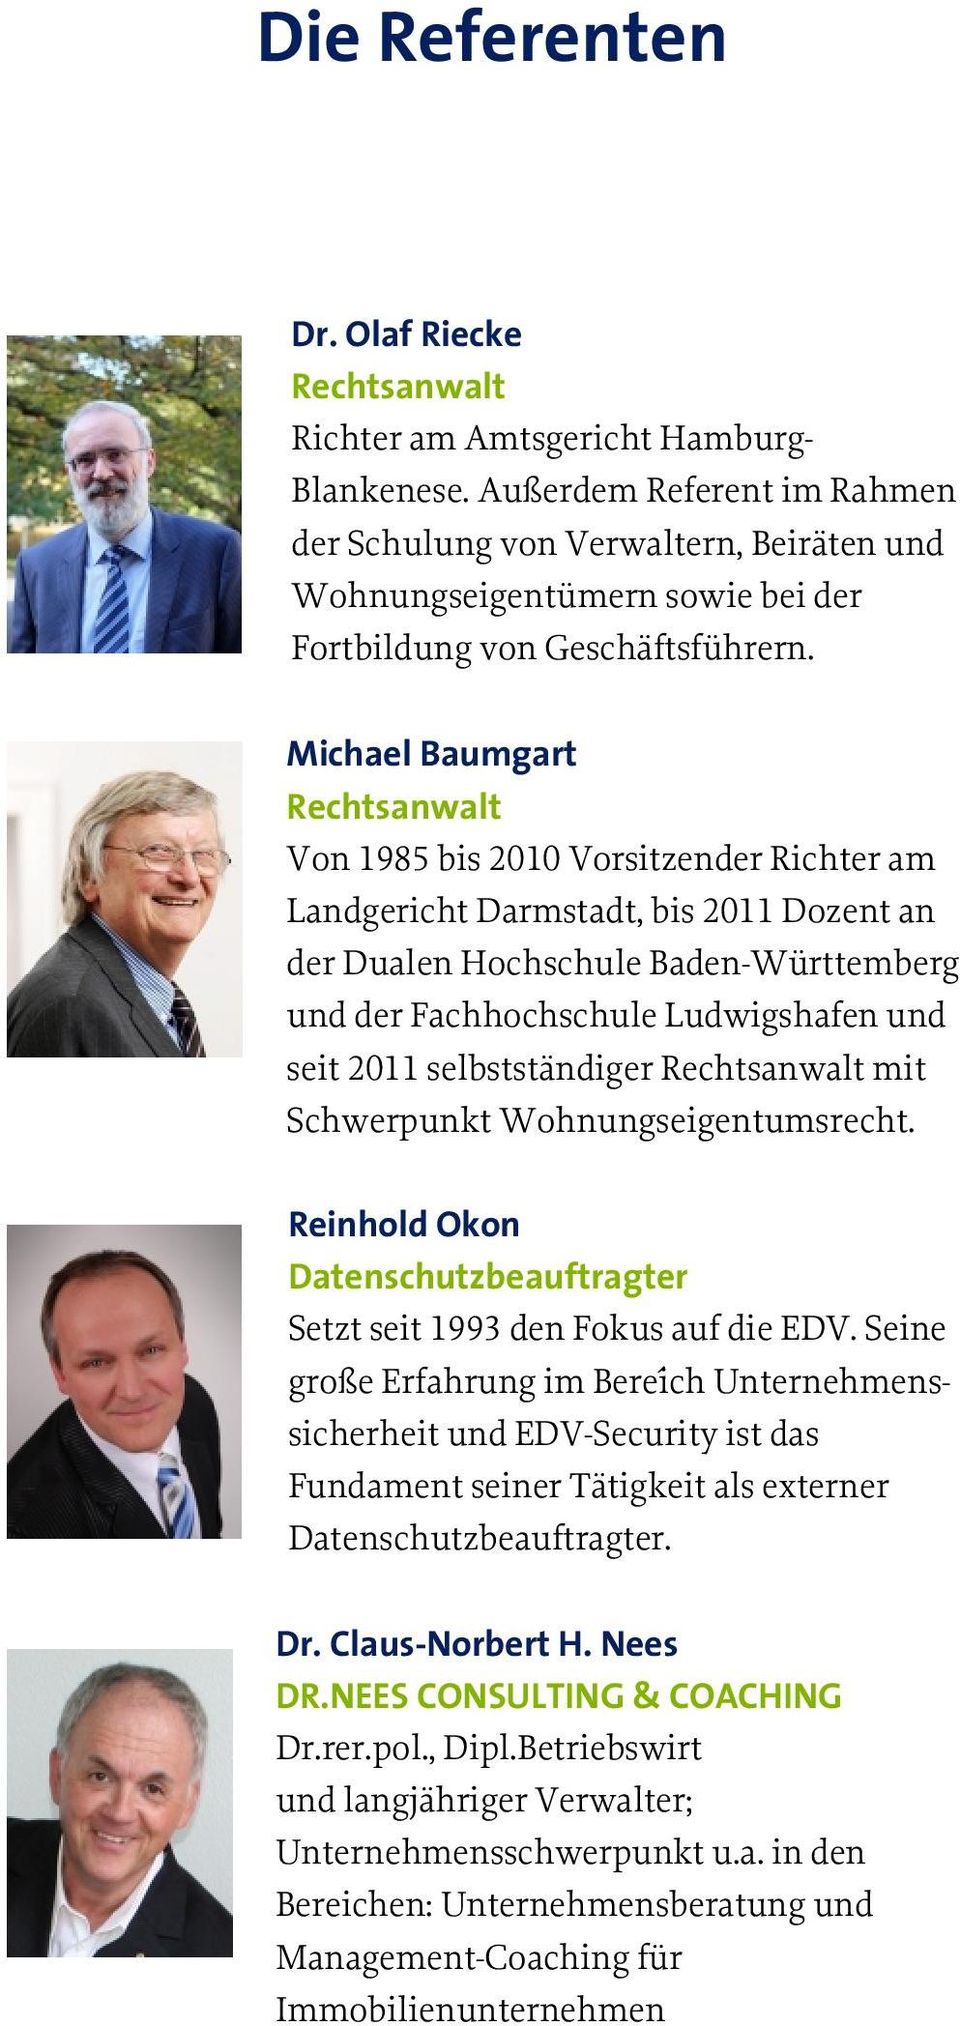 Michael Baumgart Rechtsanwalt Von 1985 bis 2010 Vorsitzender Richter am Landgericht Darmstadt, bis 2011 Dozent an der Dualen Hochschule Baden-Württemberg und der Fachhochschule Ludwigshafen und seit